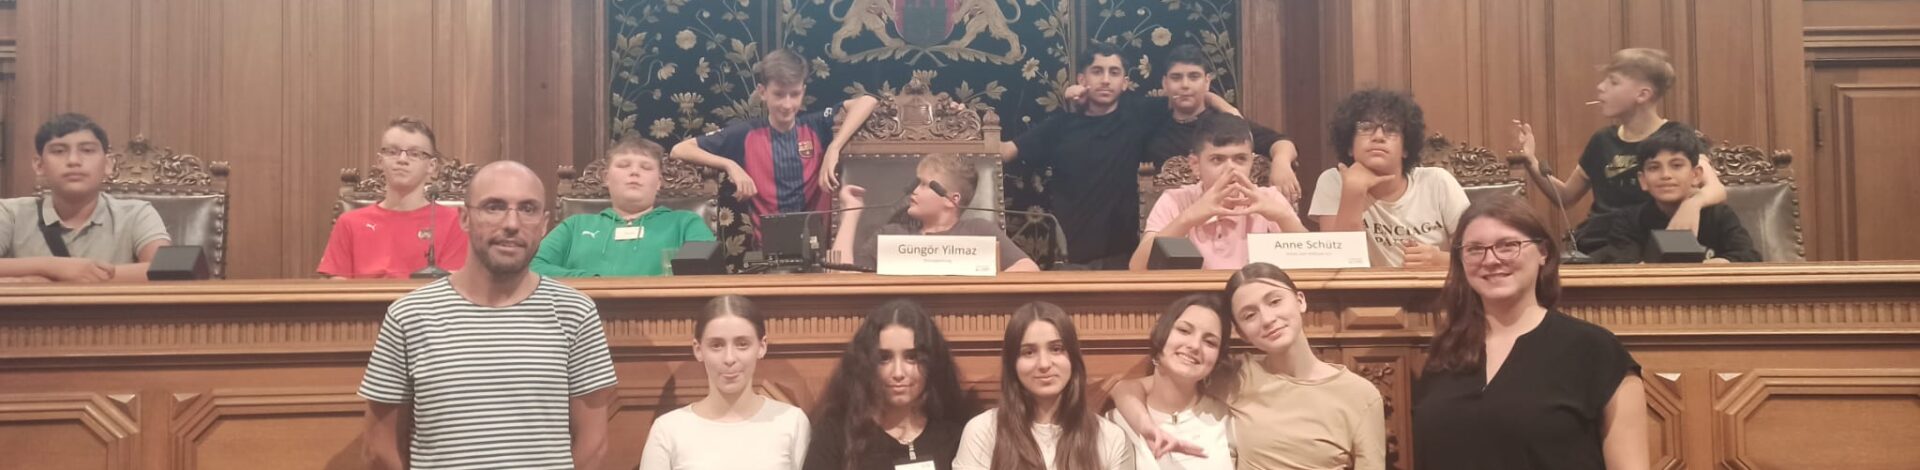 Jugend im Parlament: Klasse 8i besucht die Hamburgische Bürgerschaft